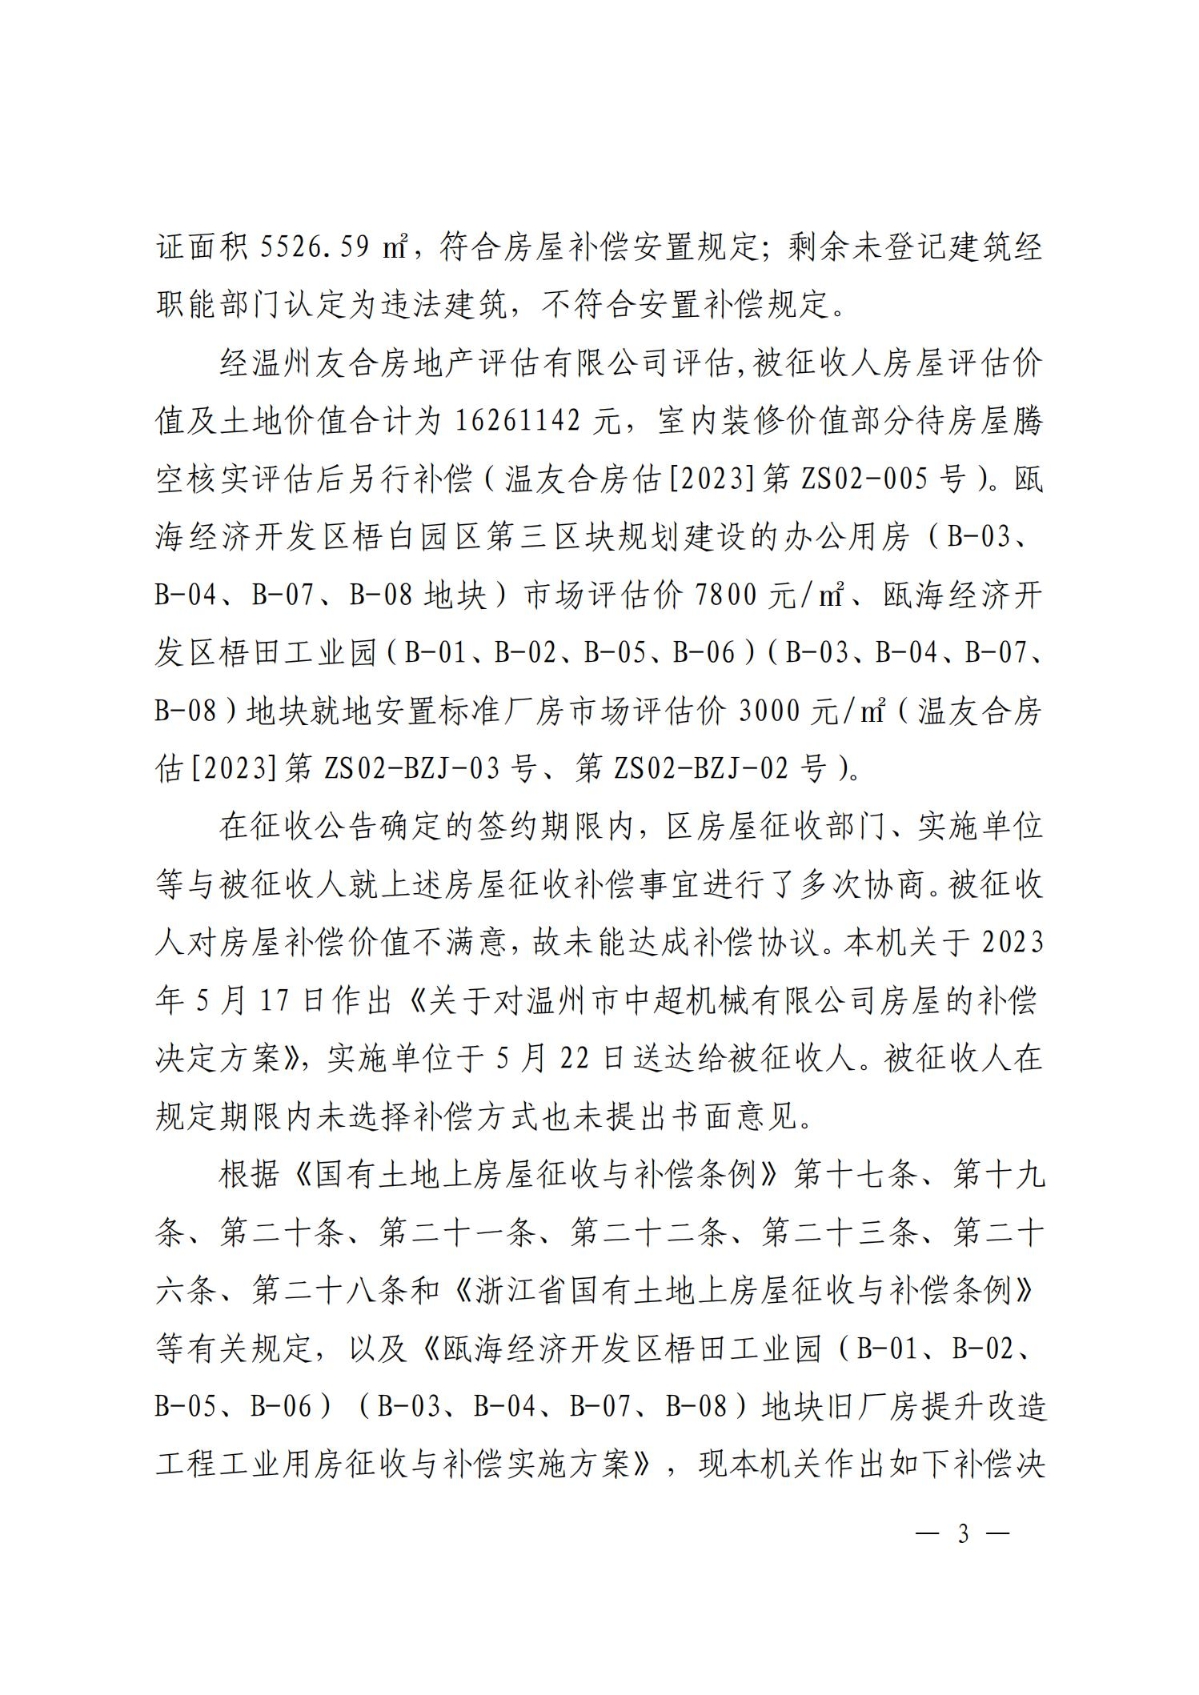 关于对温州市中超机械有限公司房屋的补偿决定(1)(1)_02.jpg